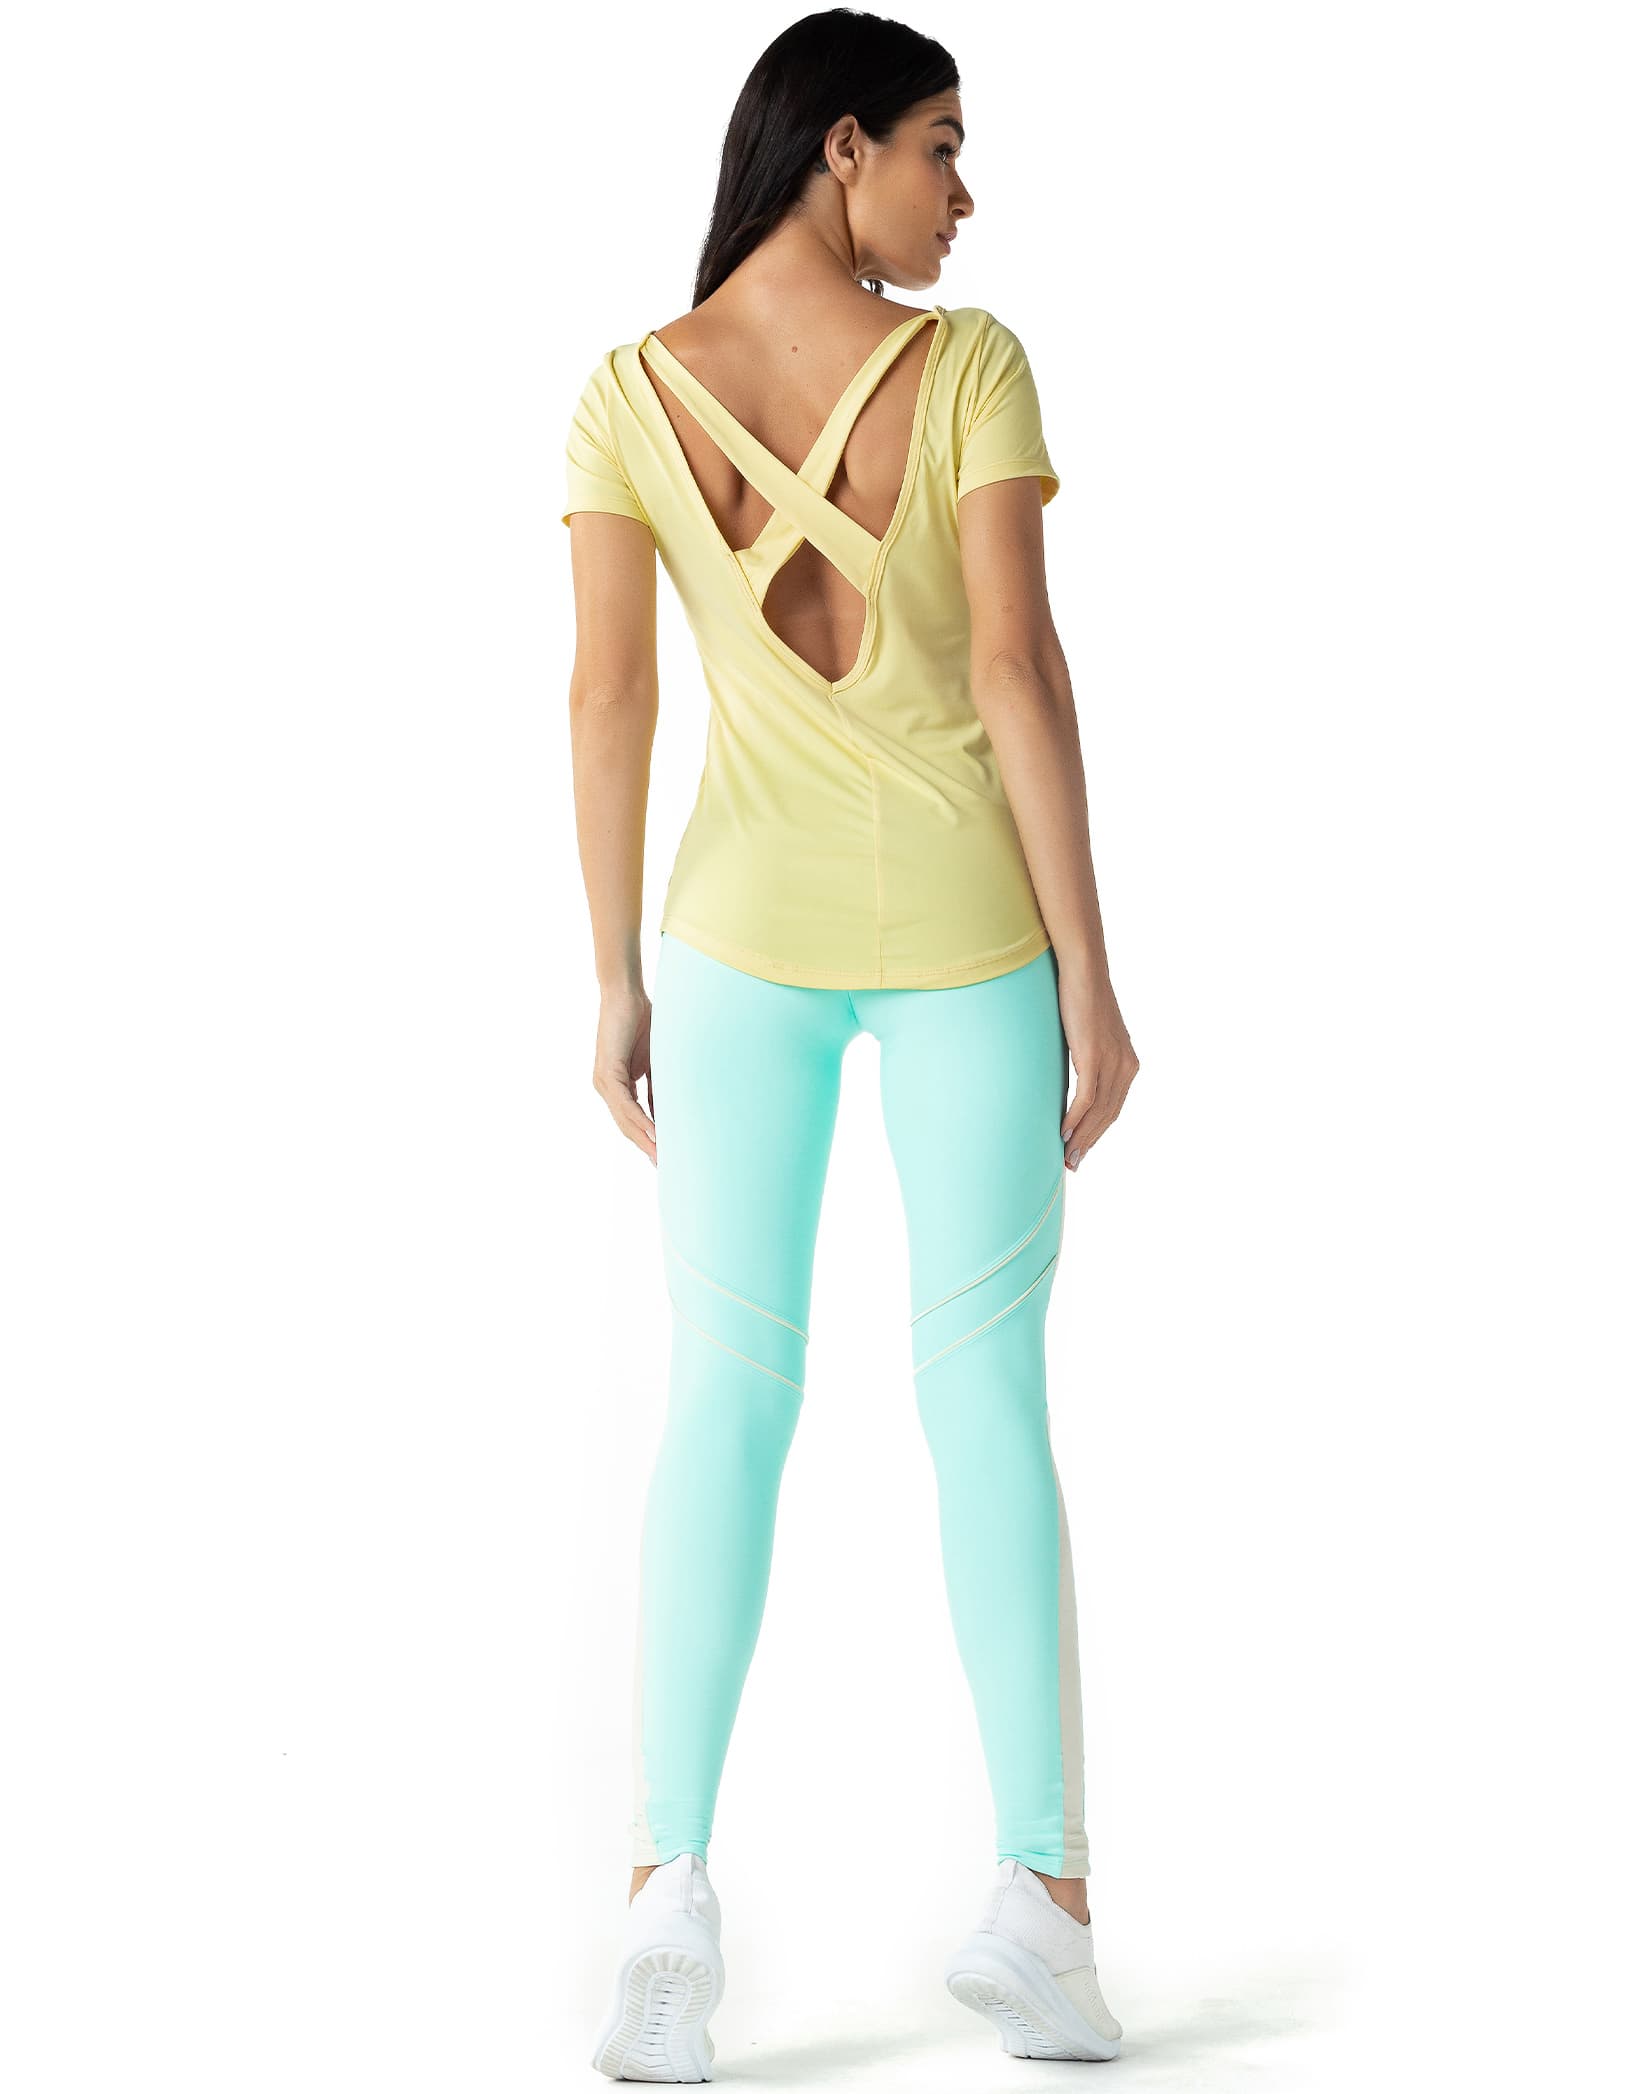 Vestem - Shirt Dry Fit Short Sleeve Hermione Yellow Sun Kisses - BMC588C0179